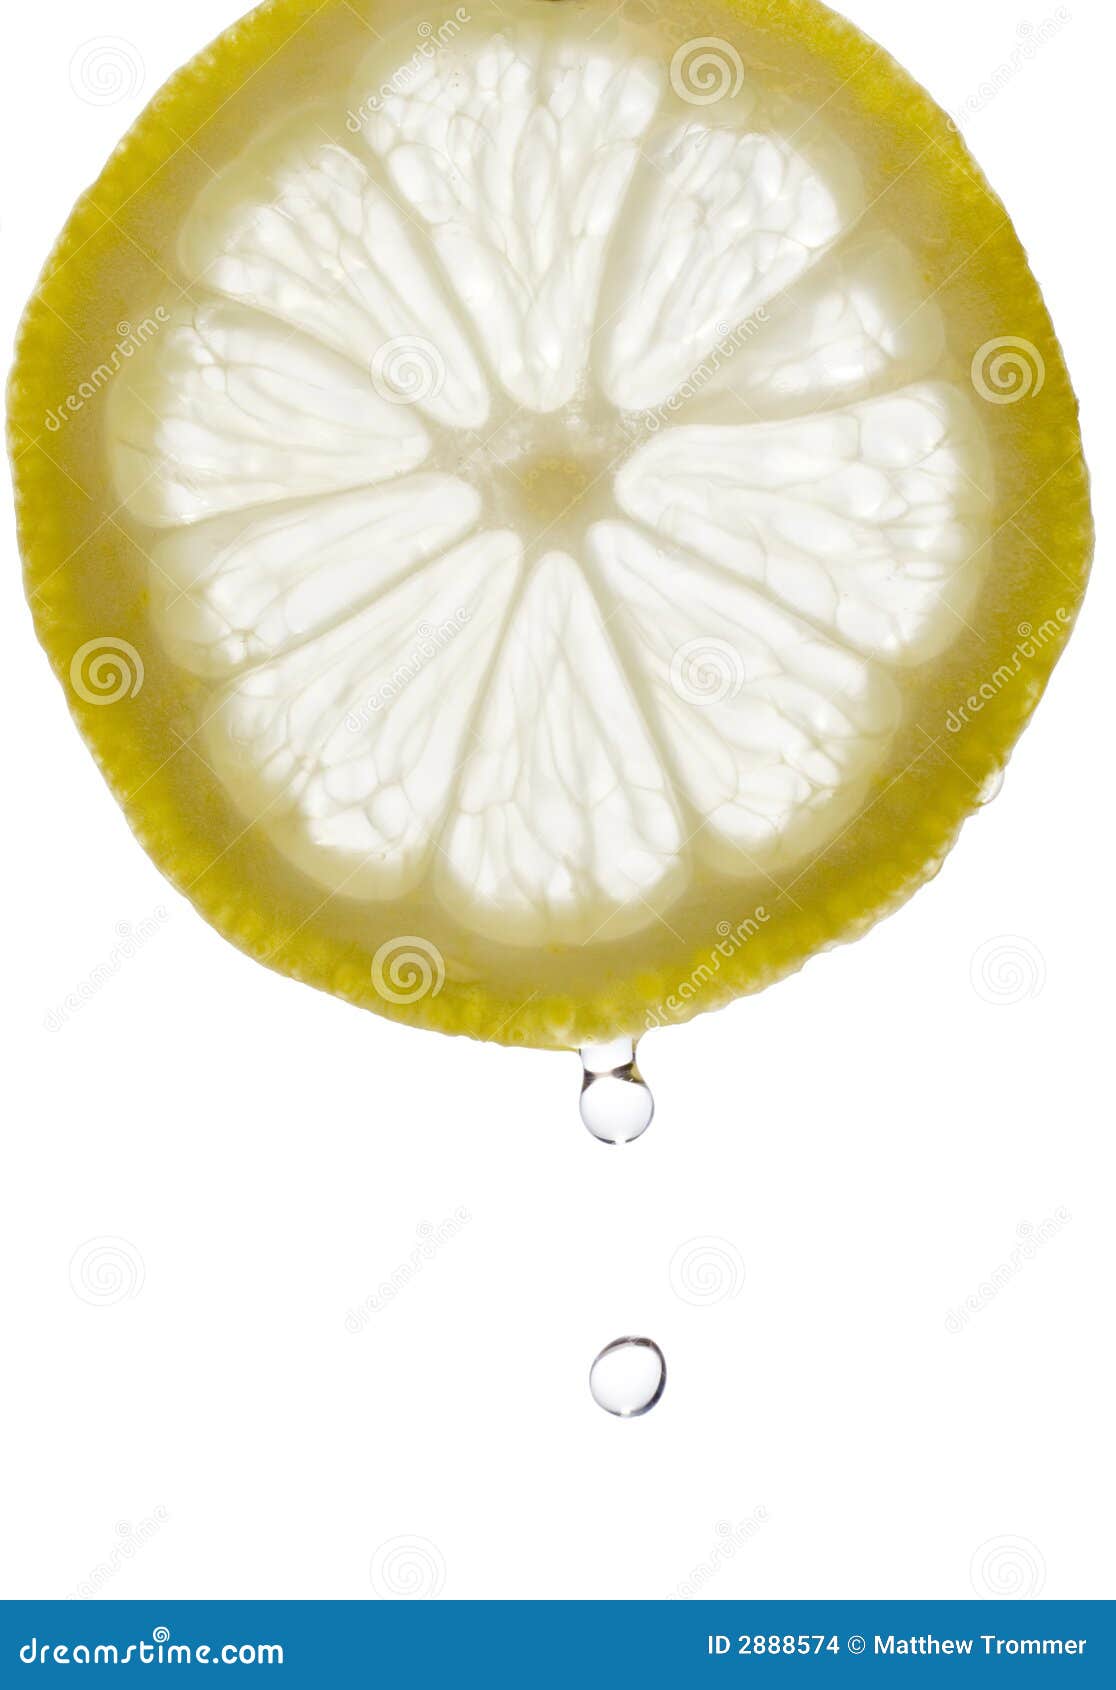 Zitrone-Tropfen. Ein Wassertropfen, der von einer Scheibe der Zitrone fällt. Getrennt auf einem weißen Hintergrund.